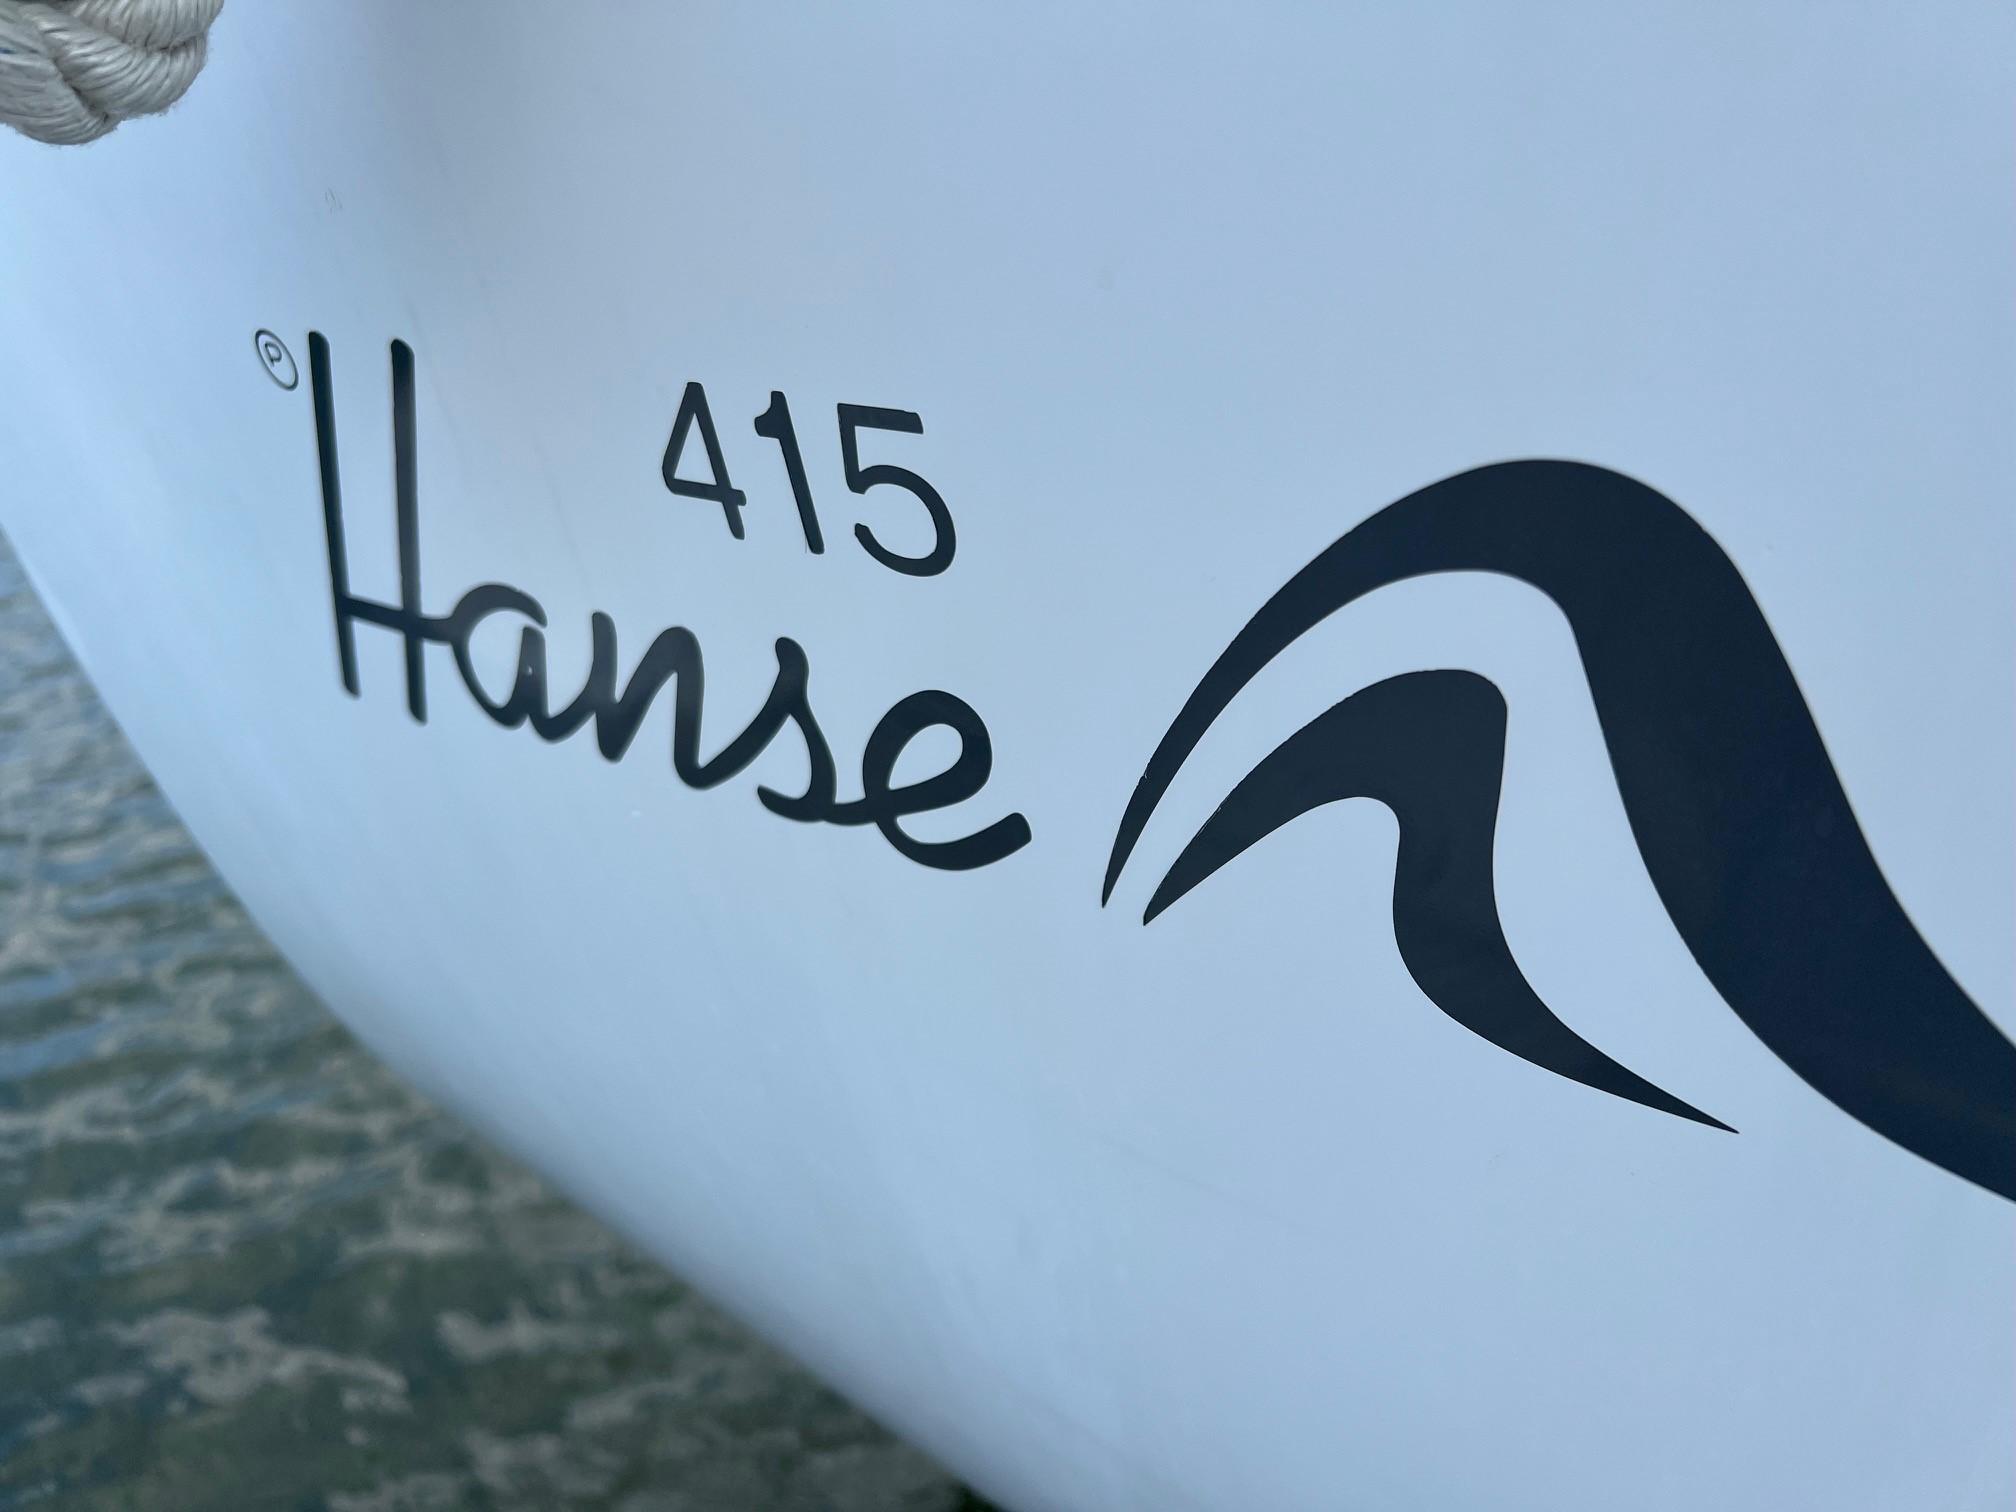 2016 Hanse 415